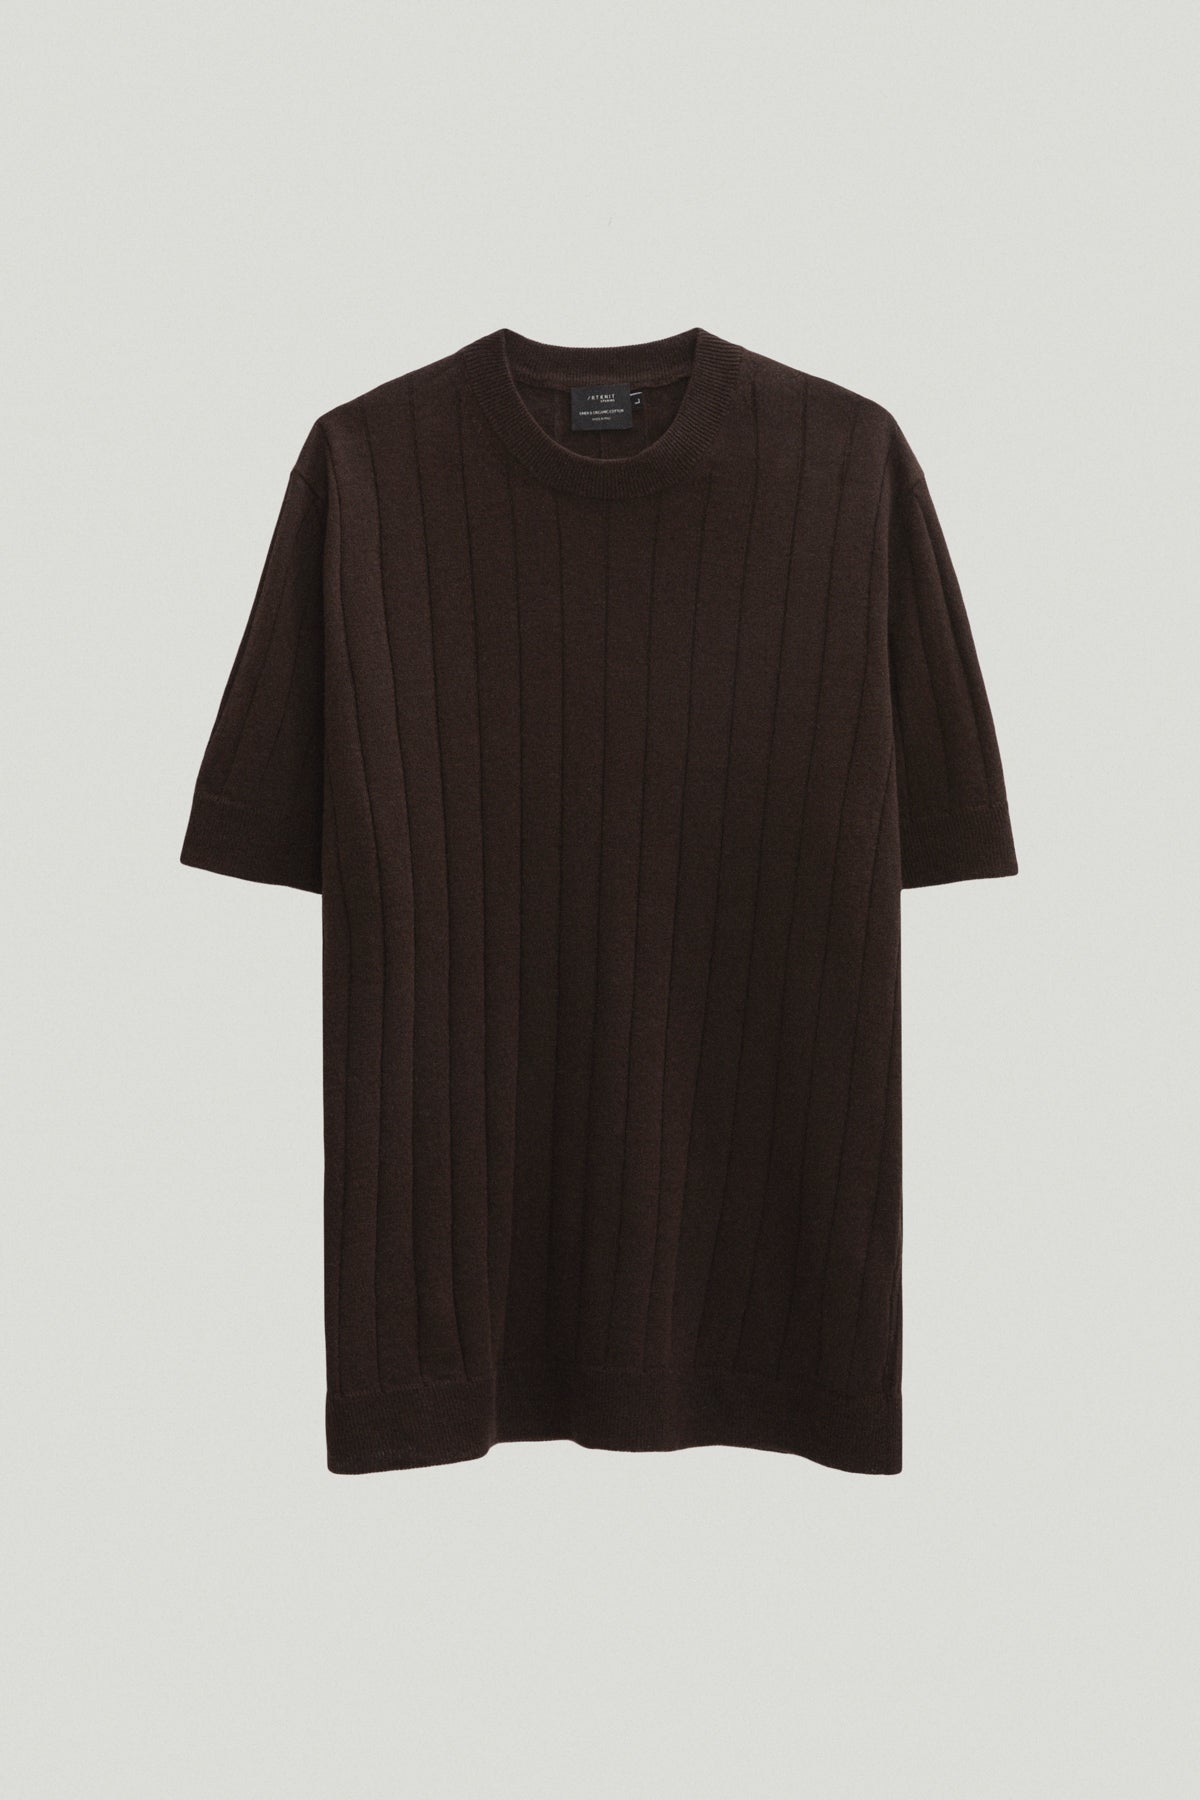 the linen cotton vintage t shirt brown